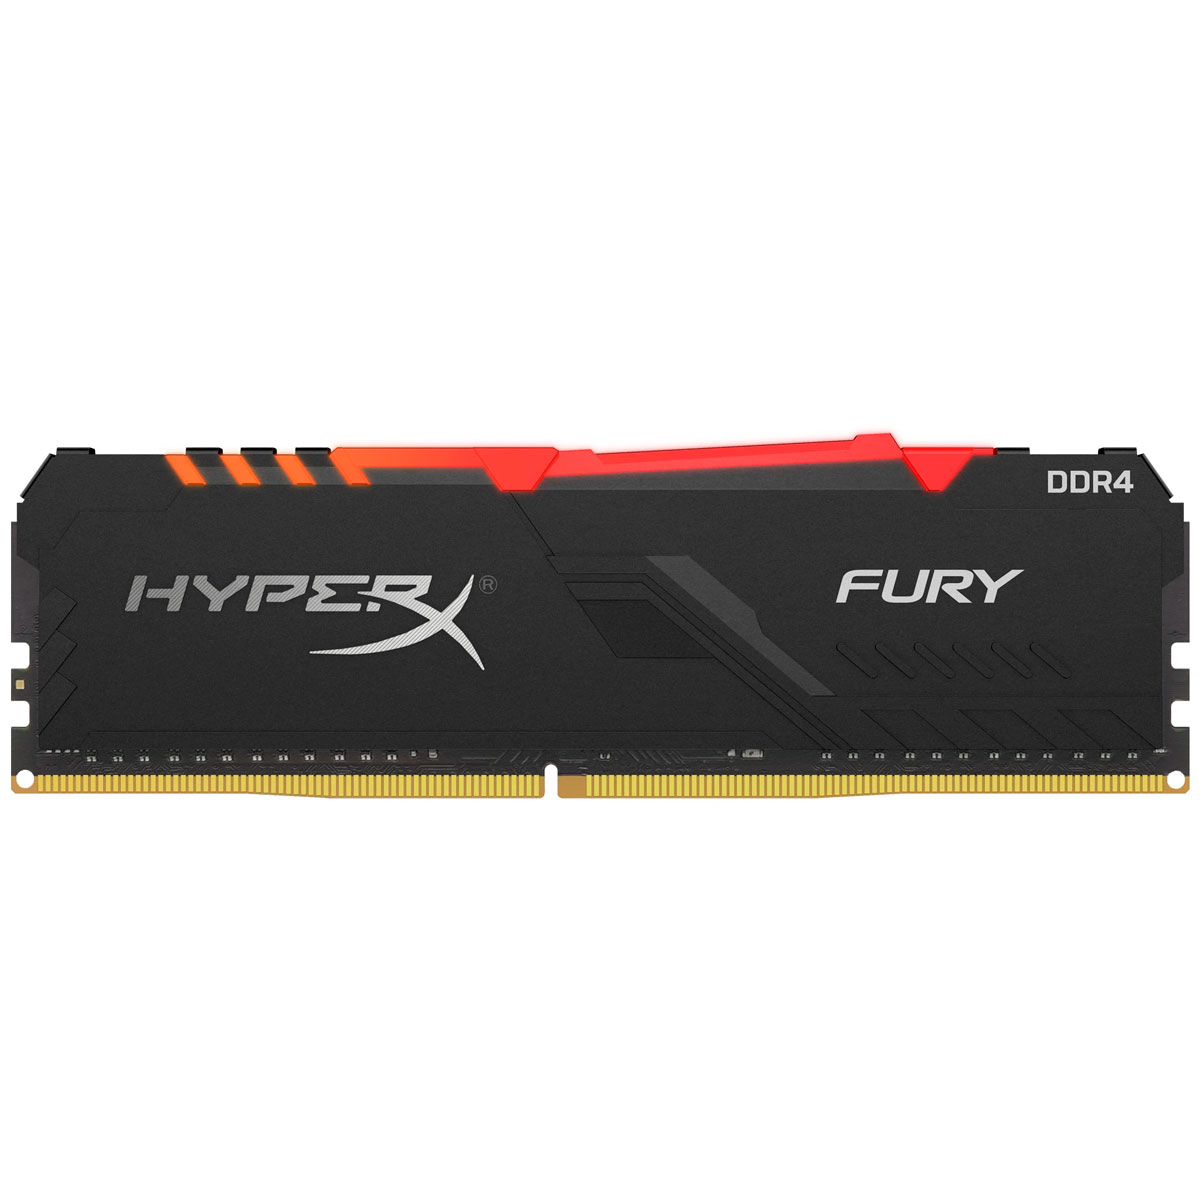 Memória 8GB DDR4 3000MHz HyperX Fury RGB - CL15 - Preto com Iluminação RGB - HX430C15FB3A/8